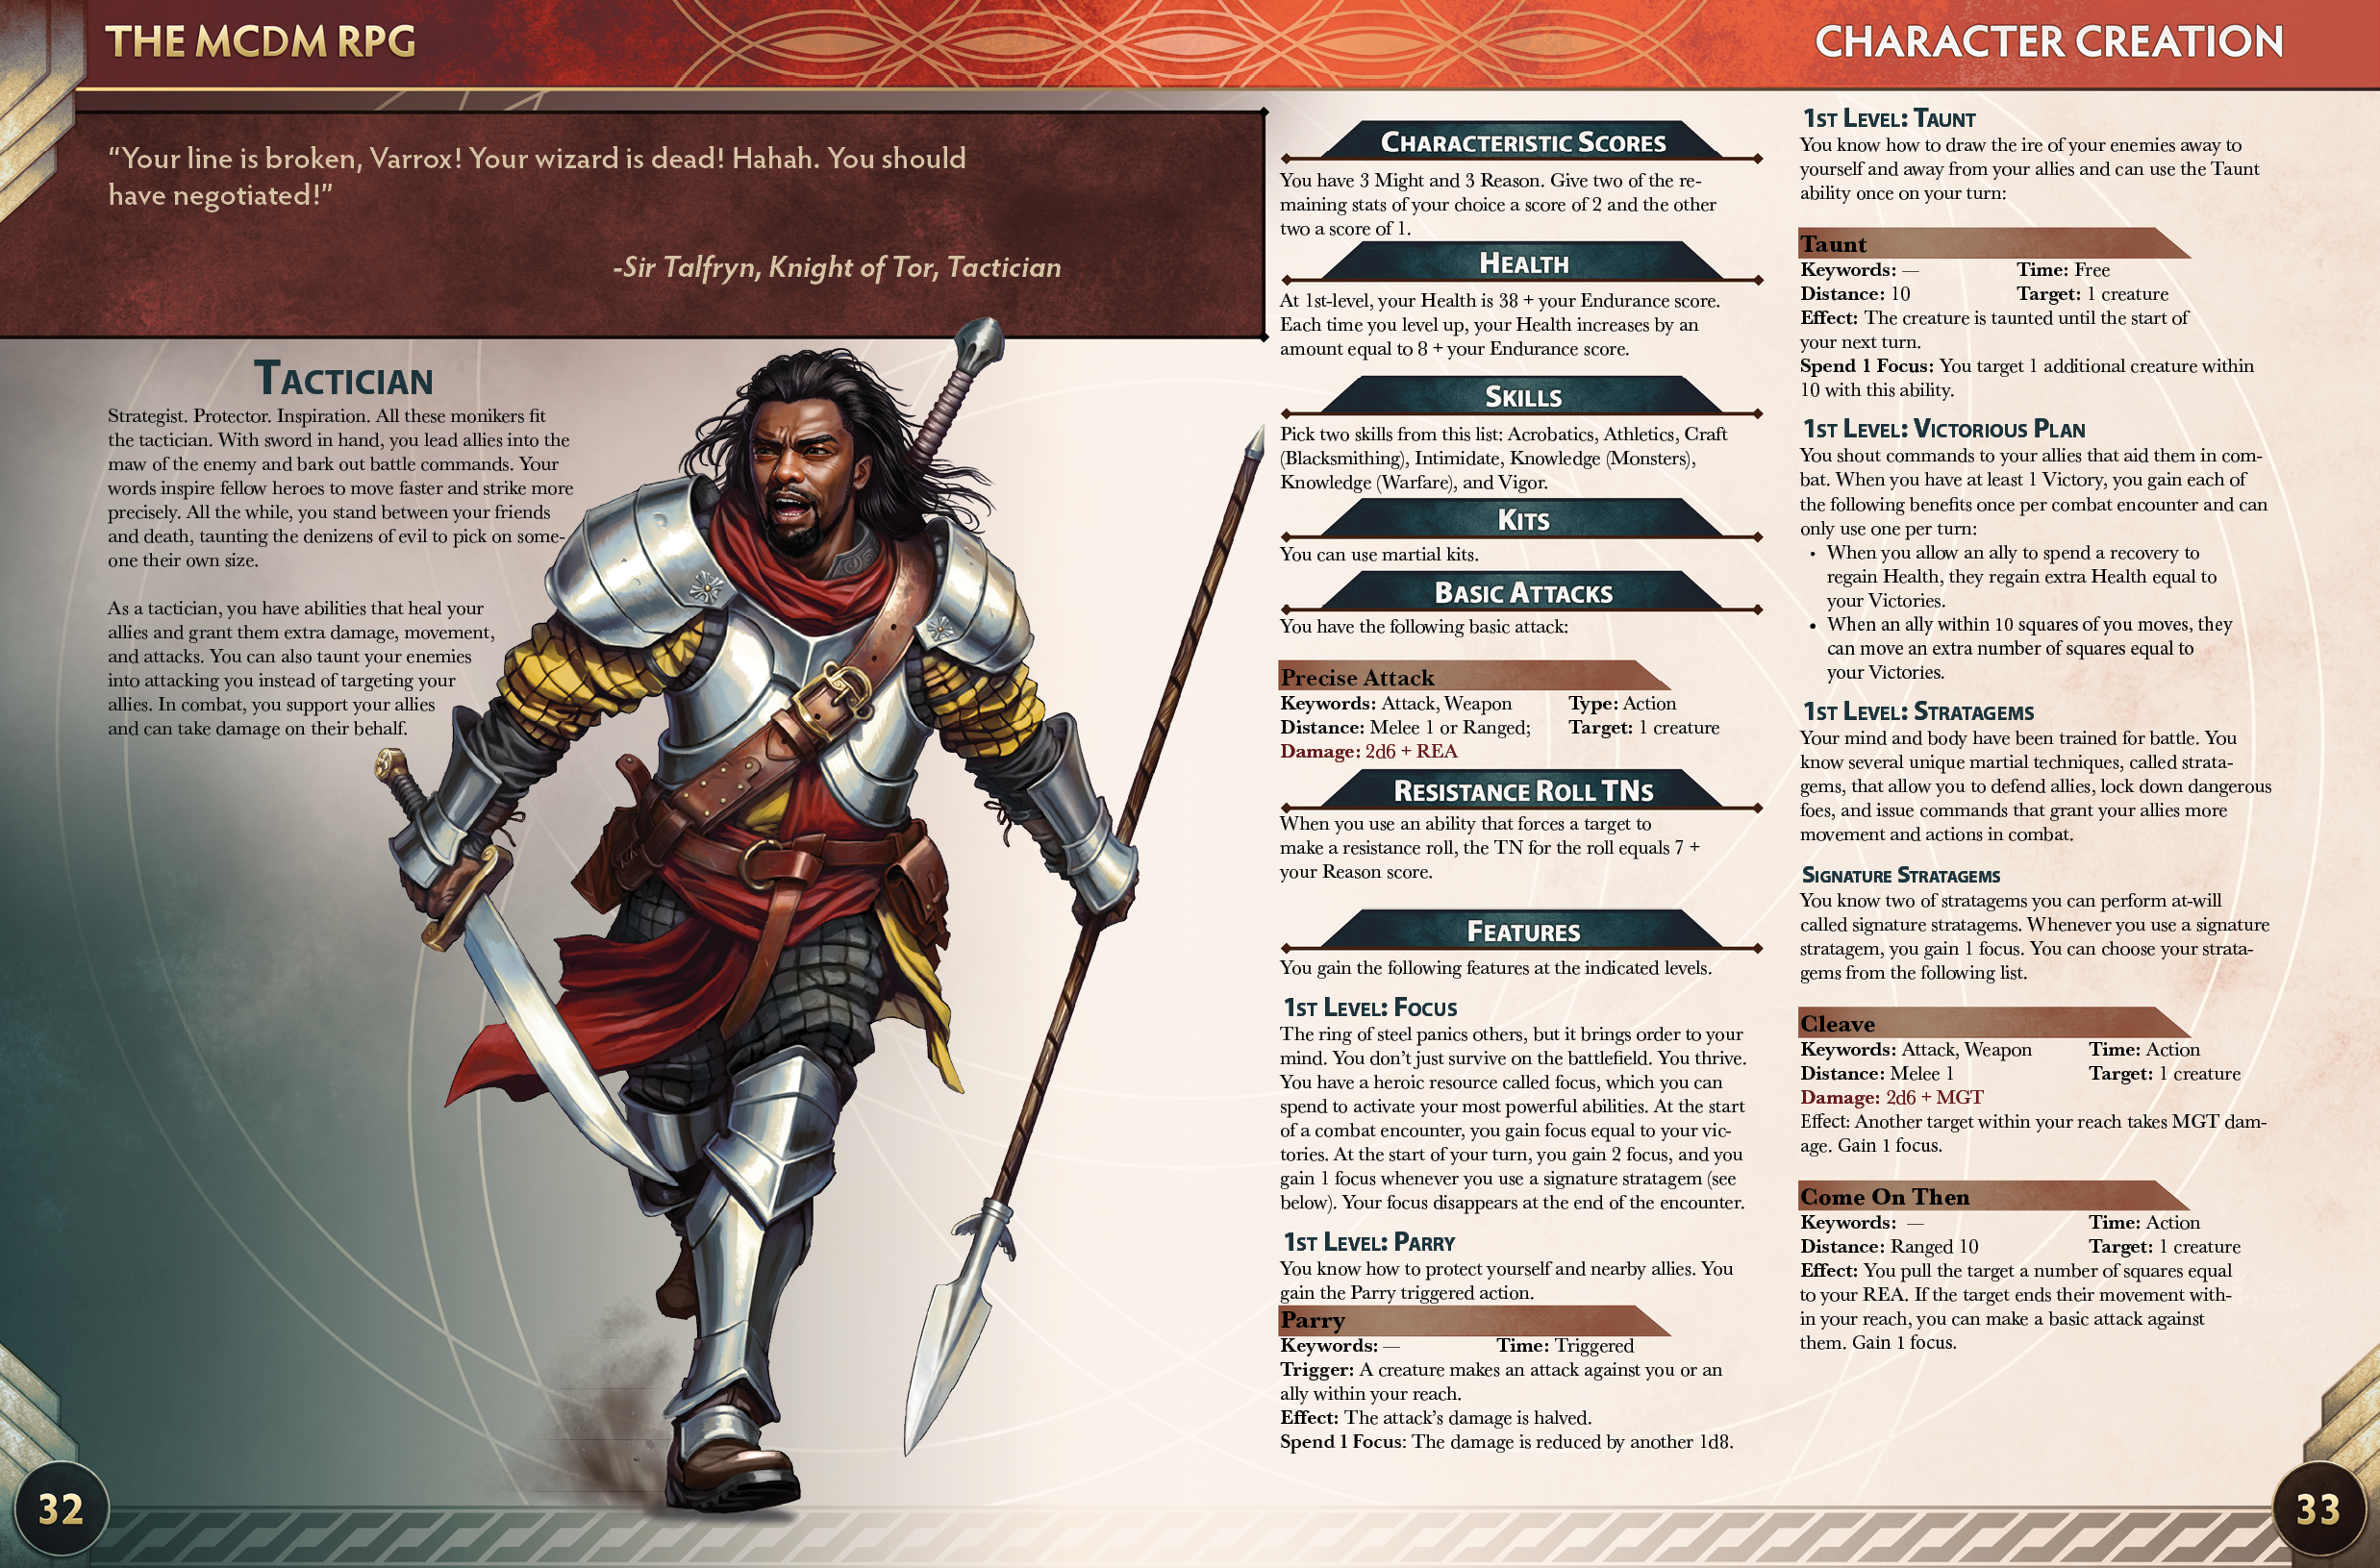 Une image du Tacticien, une classe du RPG MCDM, détaillant ses capacités et caractéristiques.